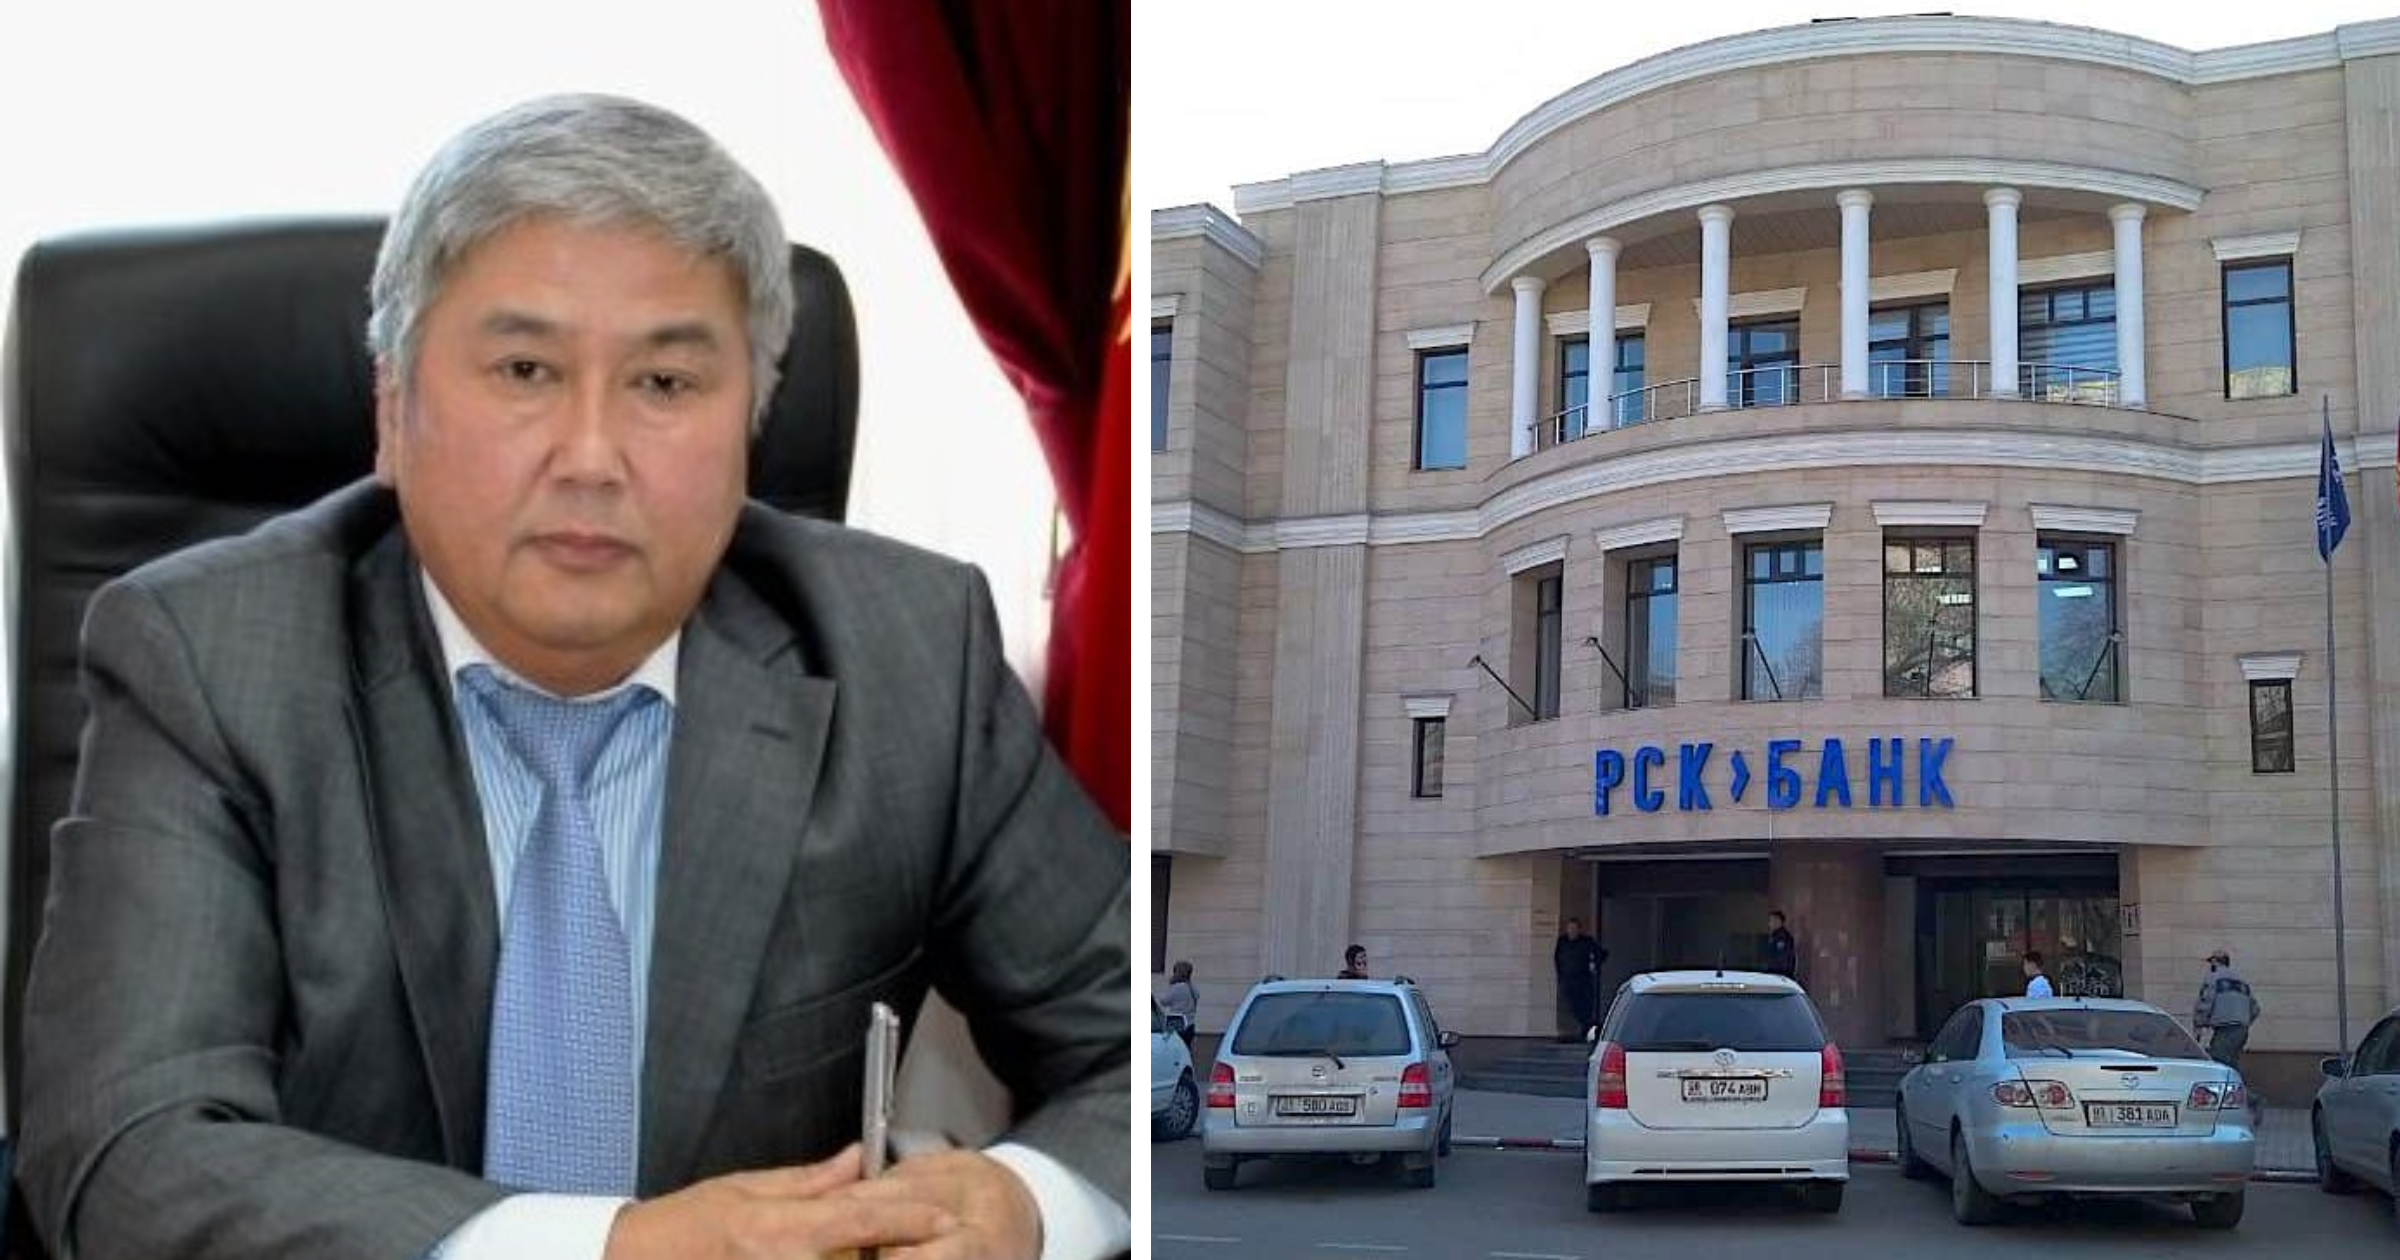 В совет директоров «РСК банка» вошел экс-глава аппарата Конституционной палаты